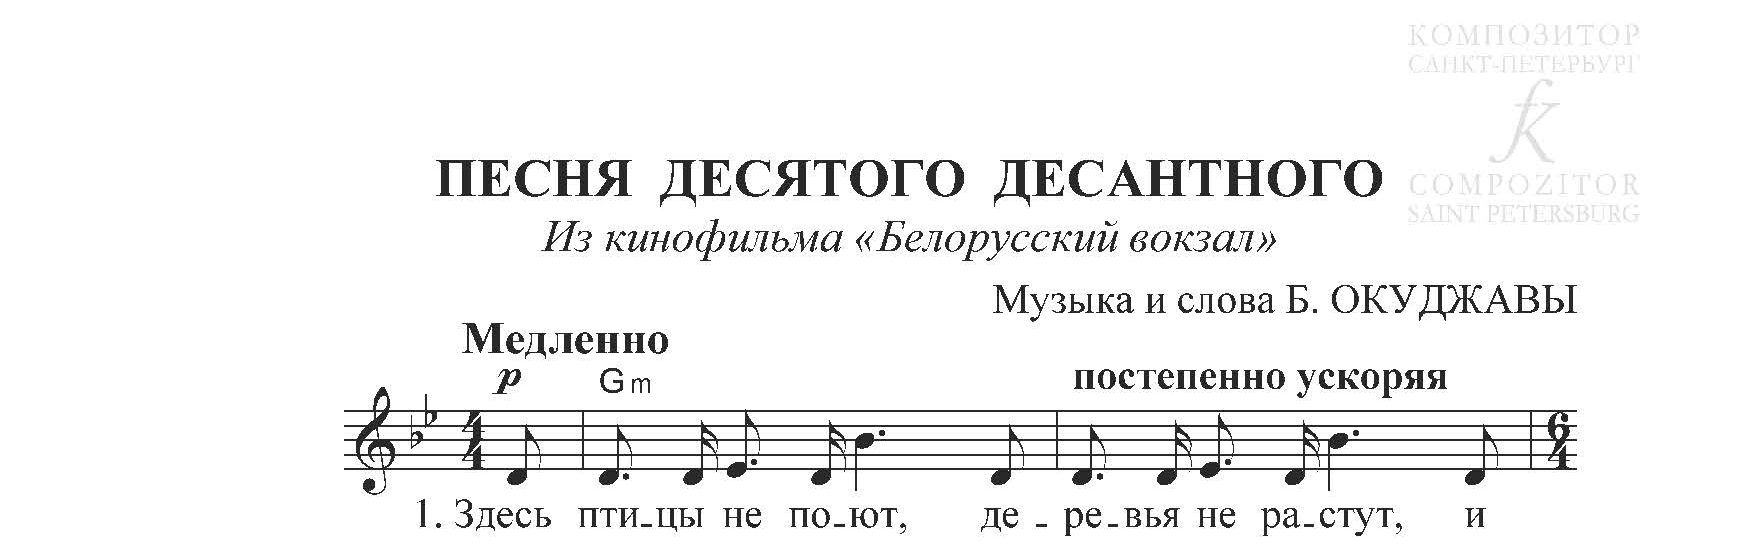 Текст песни 10 наш десантный. Песня из к ф белорусский вокзал текст. Ноты для фортепиано десятый наш десятый десантный. Песня из к/ф белорусский вокзал текст песни. Песня их к/ф белорусский вокзал Ноты.